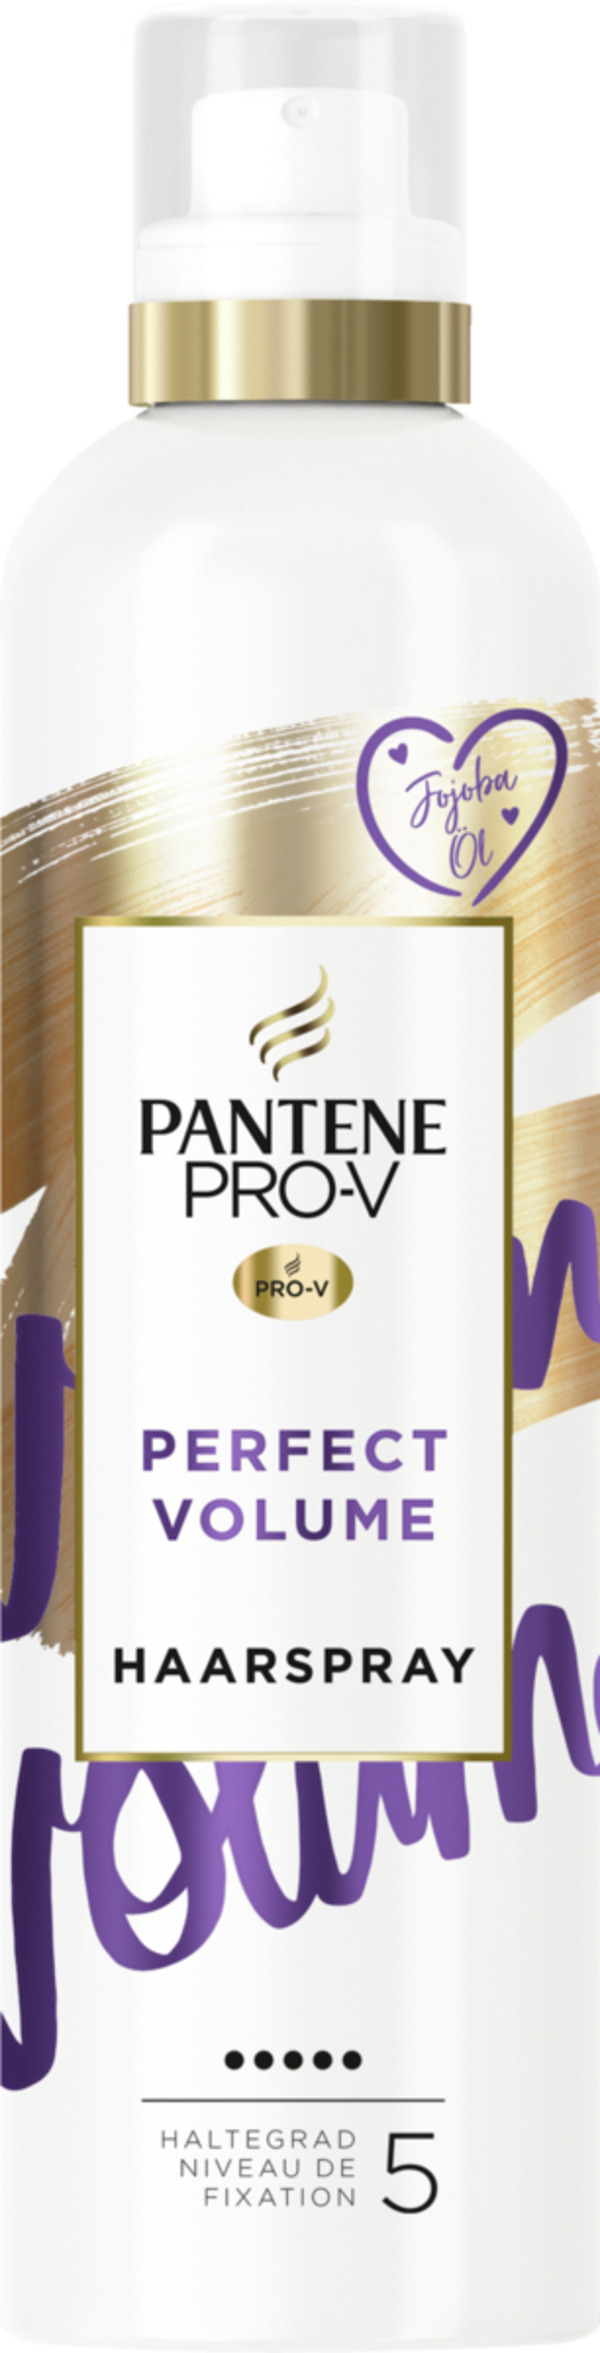 Bild 1 von Pantene Pro-V Perfect Volume Haarspray